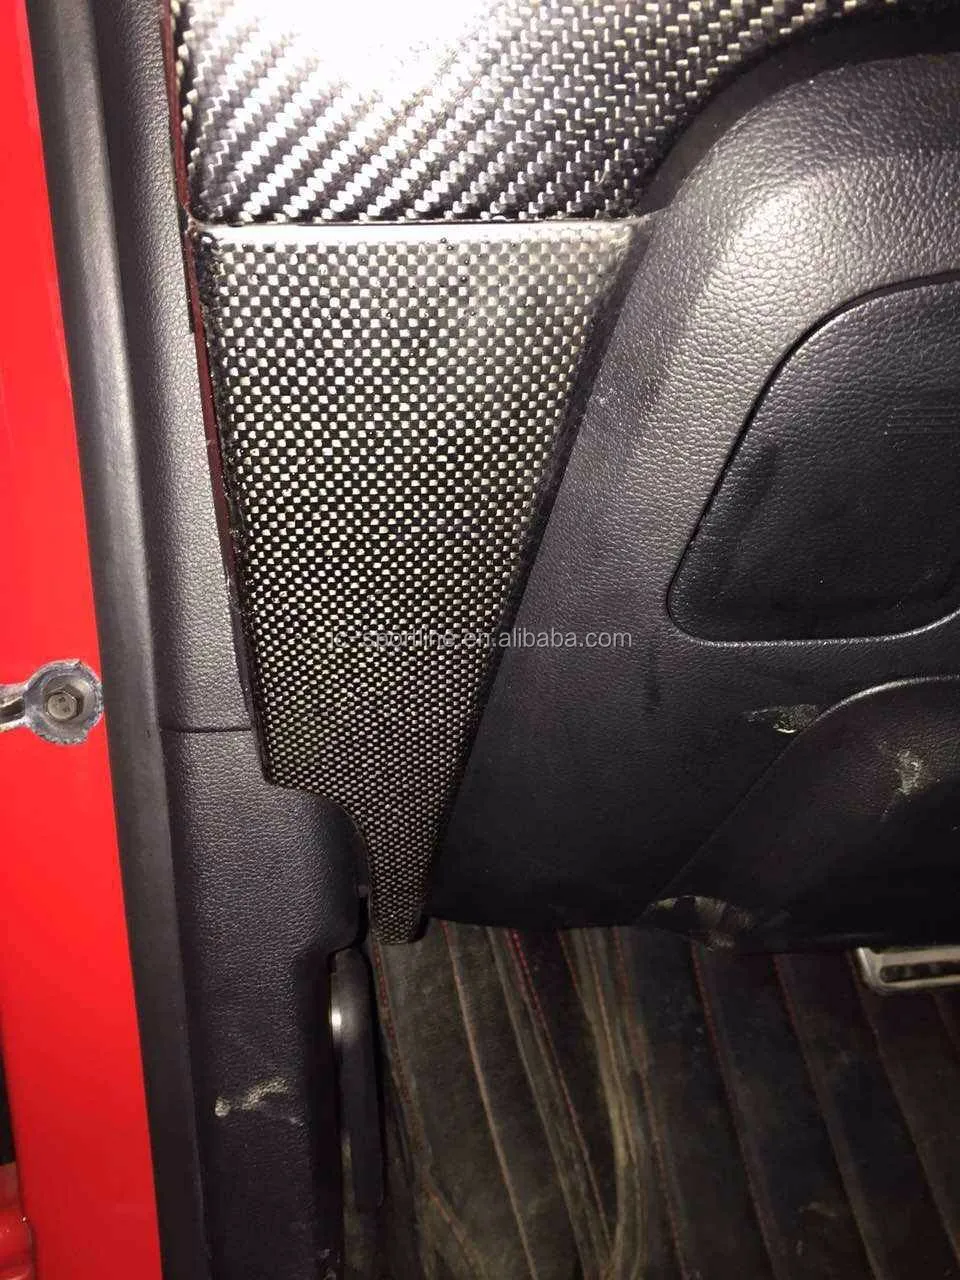 10pcs Set Carbon Fiber Interior Dash Trim For Ford Mustang 15 16 Buy Interior Trim For Ford Interior Dash Trim For Ford Interior Trim For Ford